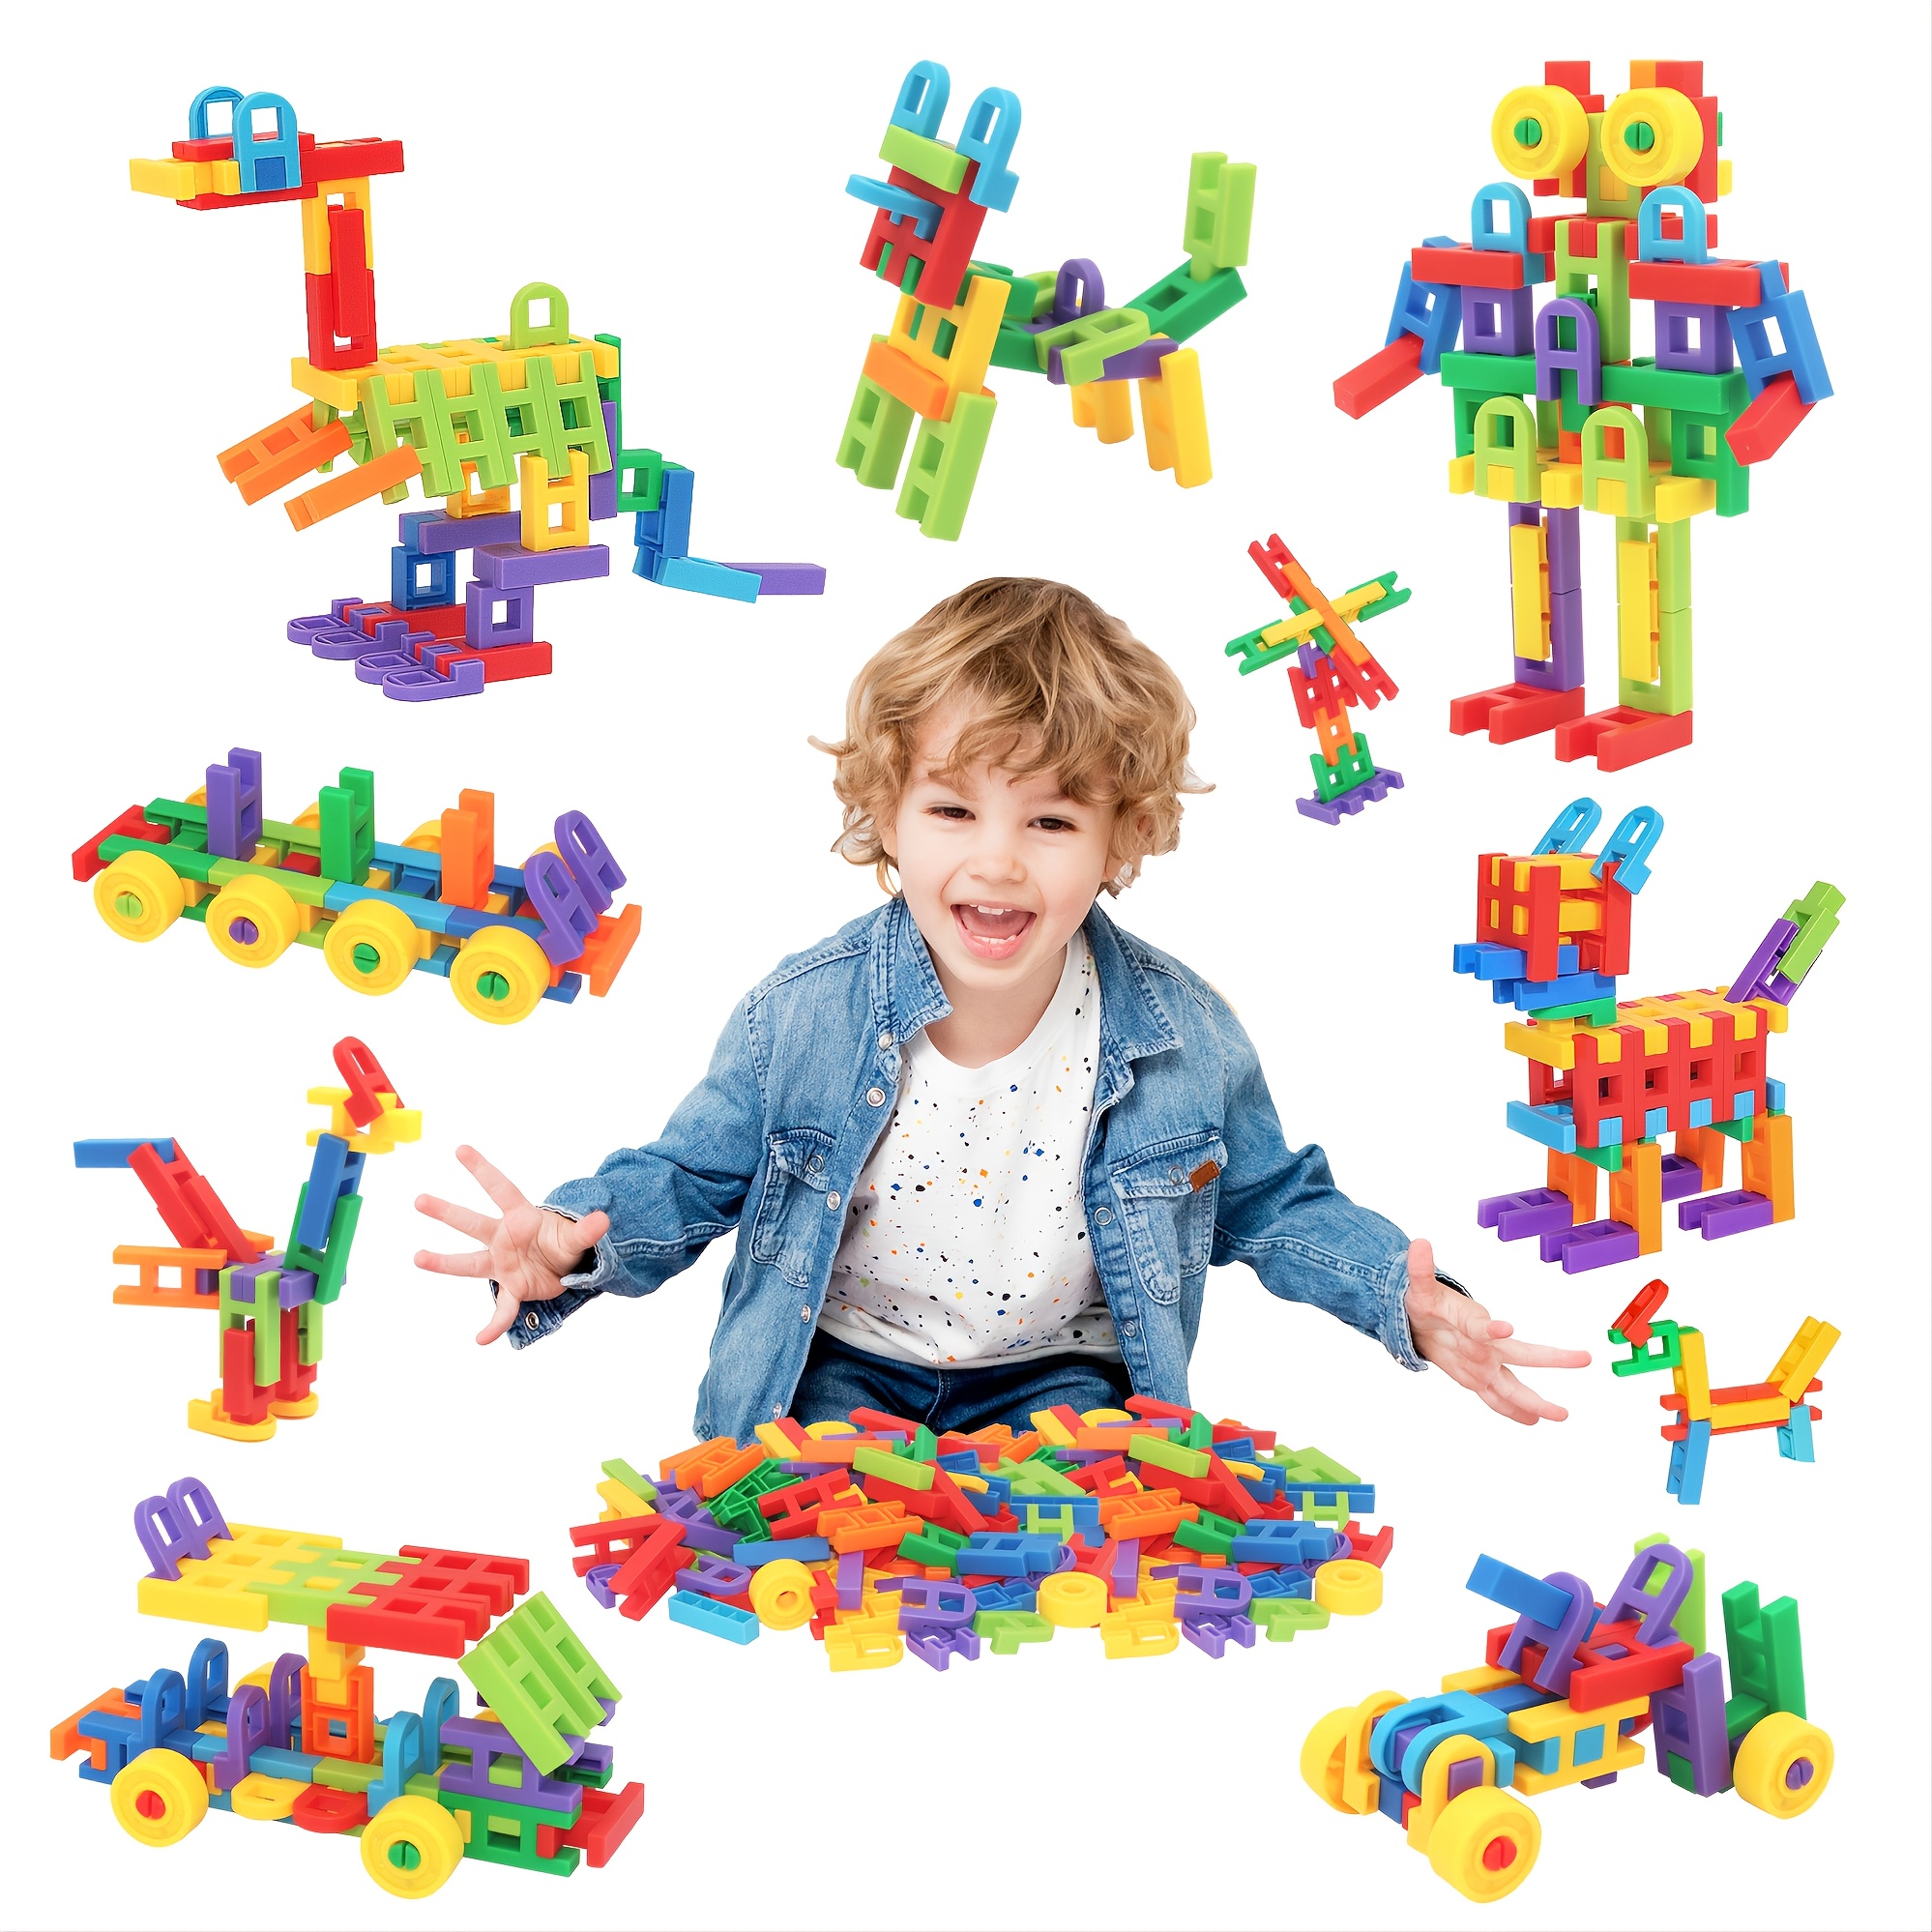 Juguetes para niños y niñas de 4 a 5 años, juguetes para niños pequeños,  bloques magnéticos, palos, azulejos, construcción, aprendizaje, educación,  tallo preescolar, juguetes para niños de más de 3 años, juguetes